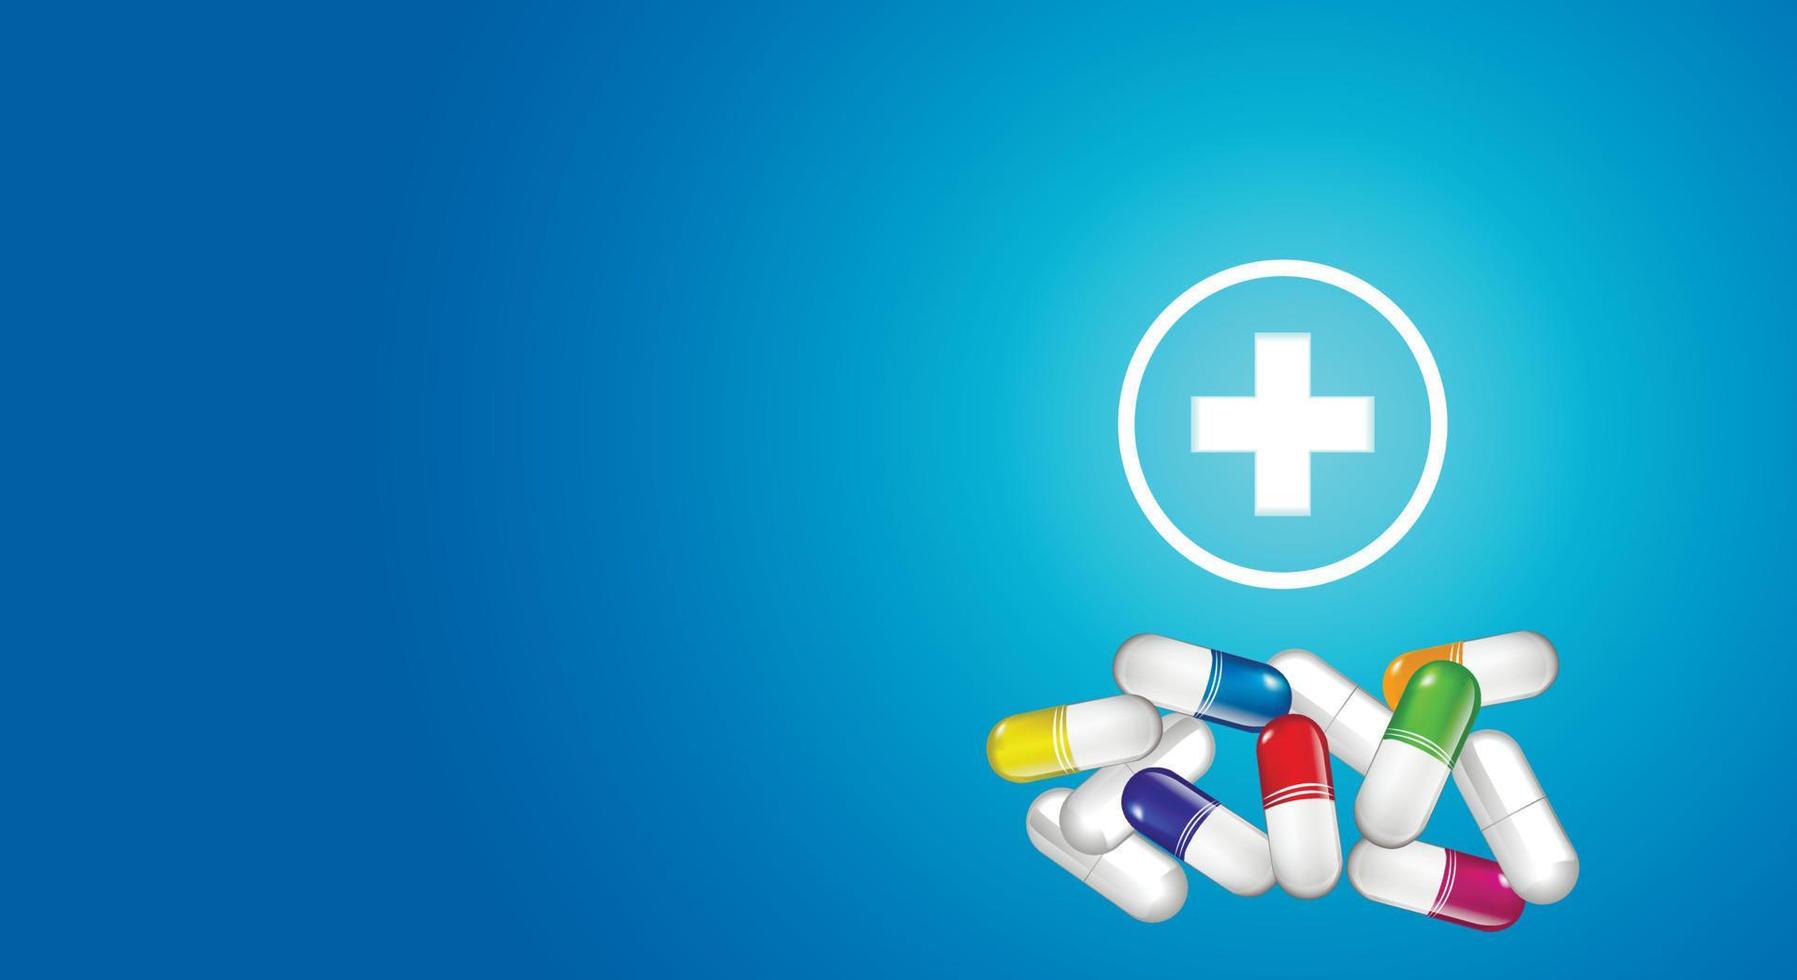 kleurrijke pillen, capsules, gloeiend kruis op een blauwe achtergrond met kleurovergang. geneeskunde gezondheidszorg symbolen. ruimte kopiëren. vector illustratie